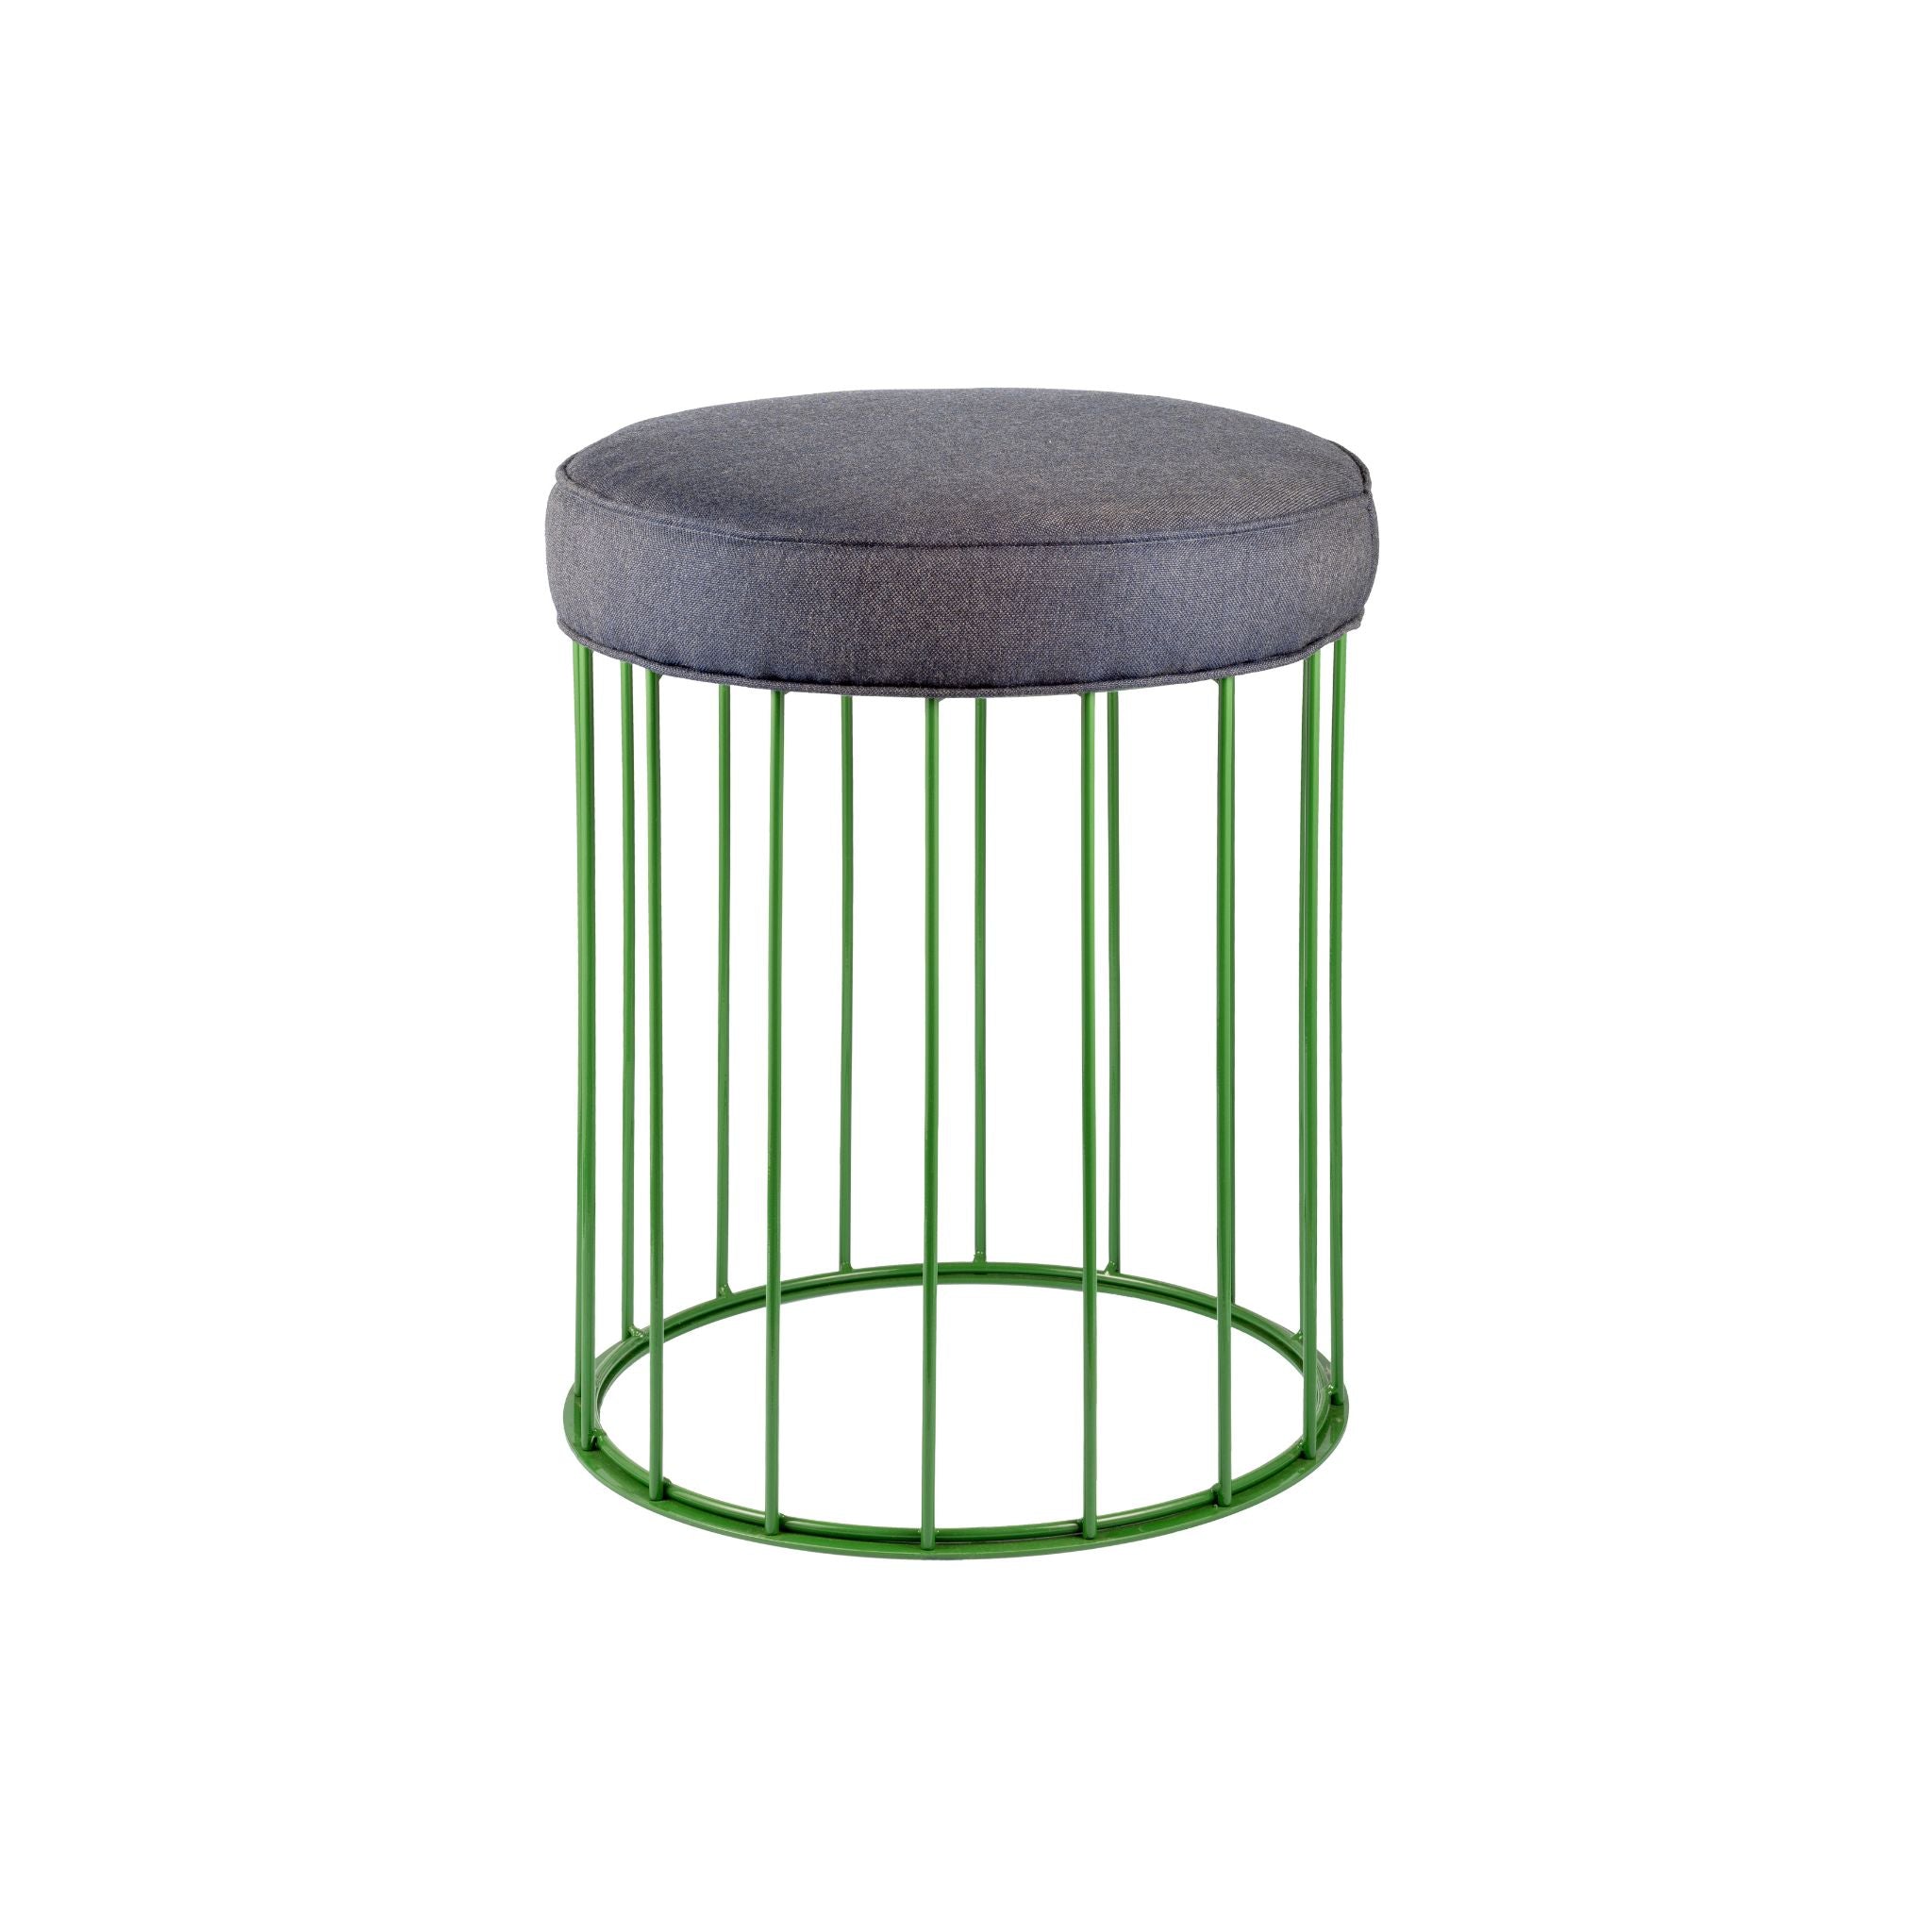 Cage grass green iron stool - ilbronzetto